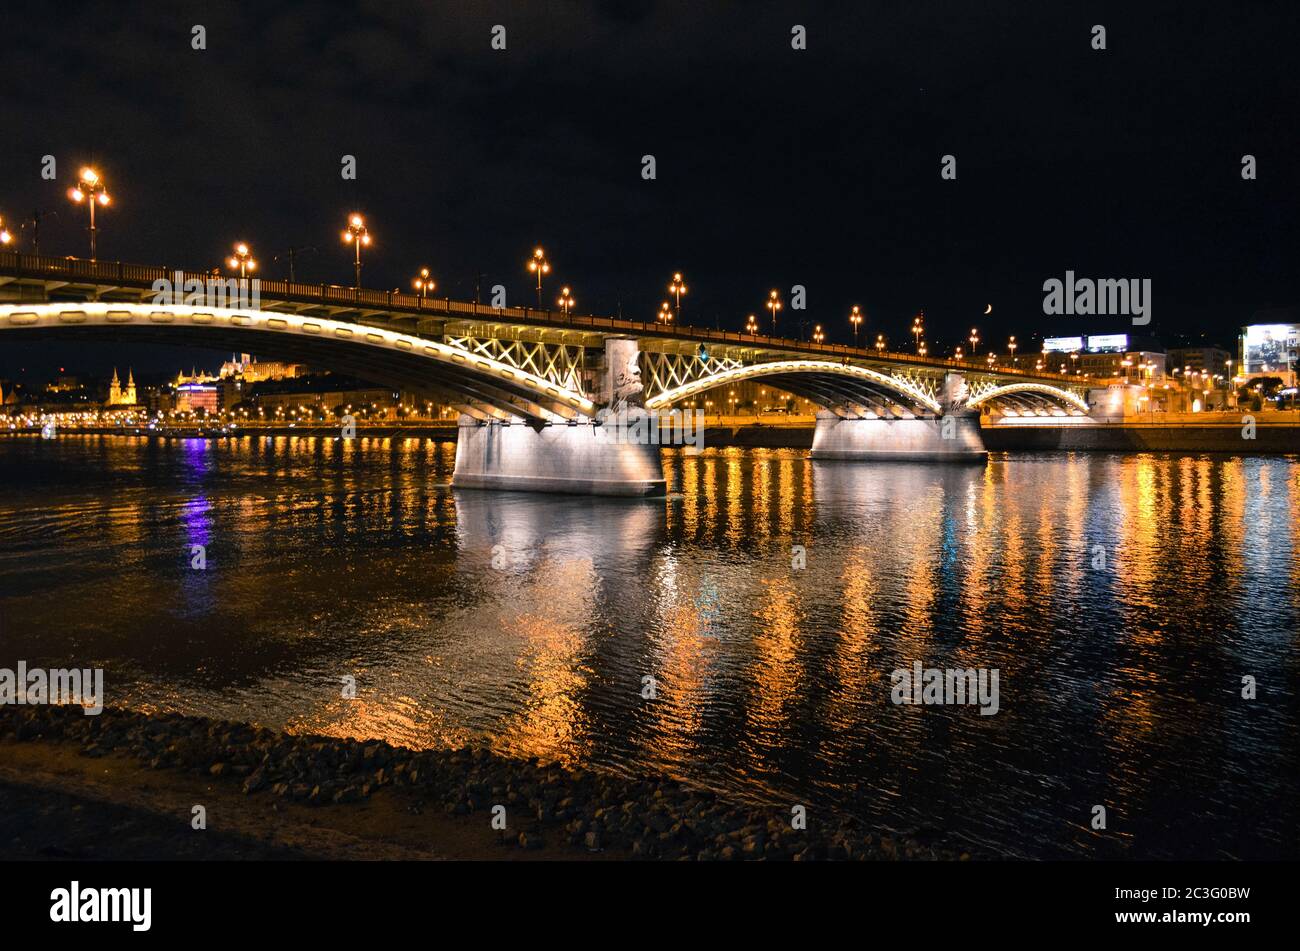 Margit (Margaret) bridge and the Danube river. Night view. Budapest, Hungary Stock Photo